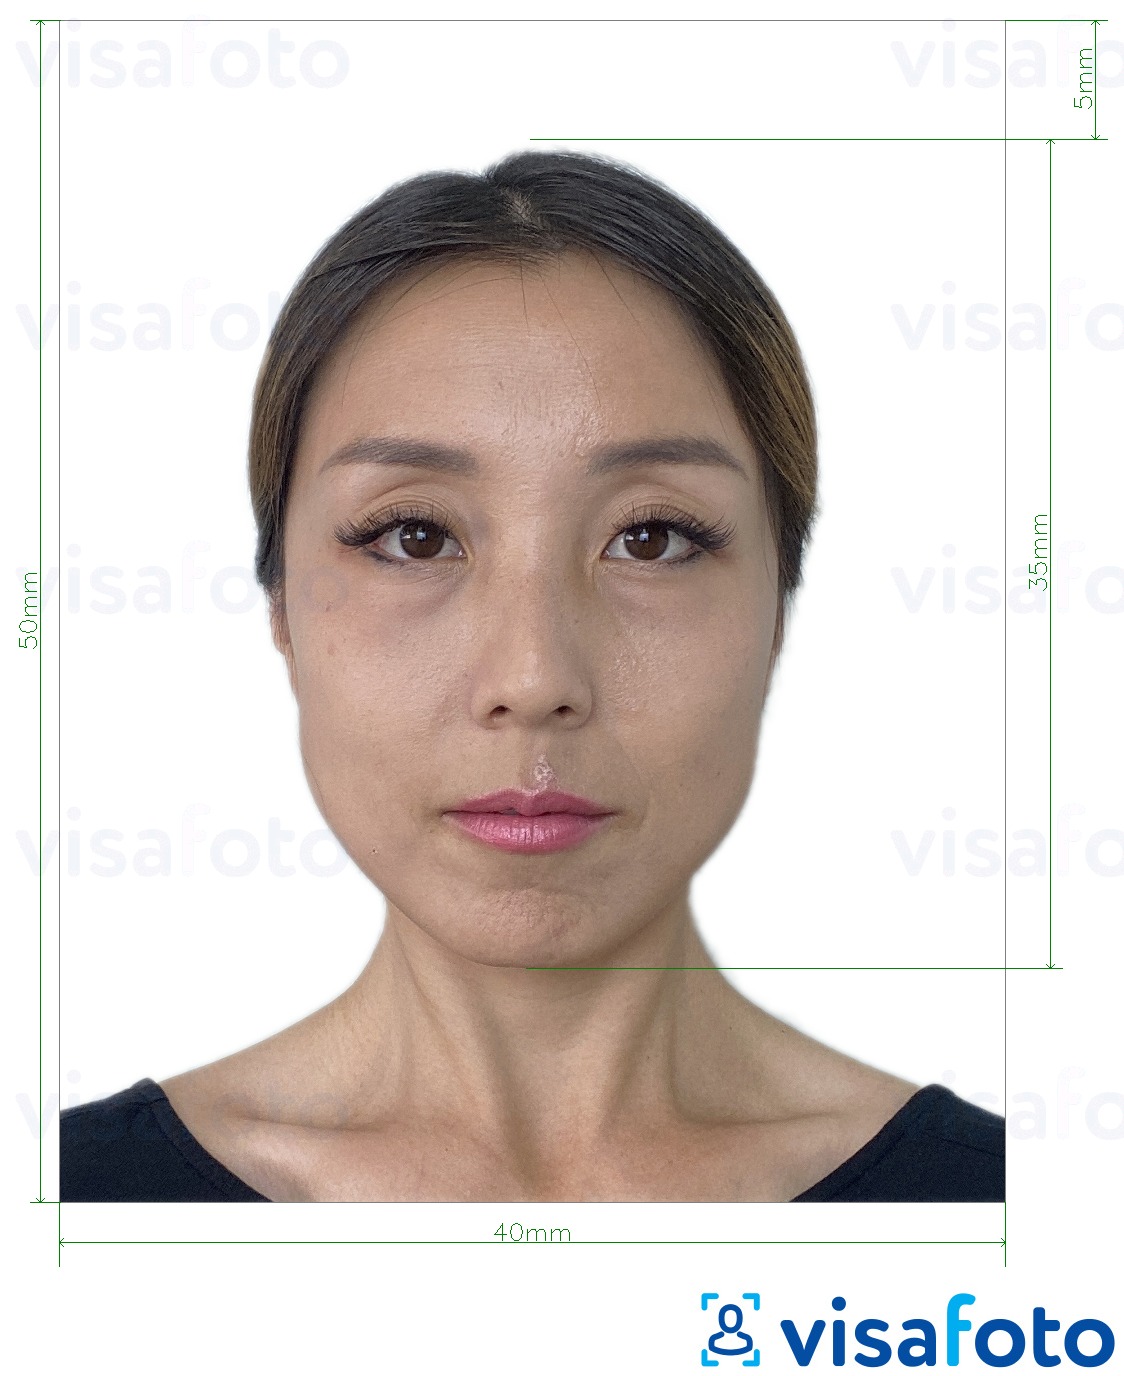 نمونه ی یک عکس برای پاسپورت هنگ کنگ 40x50 میلی متر (4x5 سانتیمتر) با مشخصات دقیق